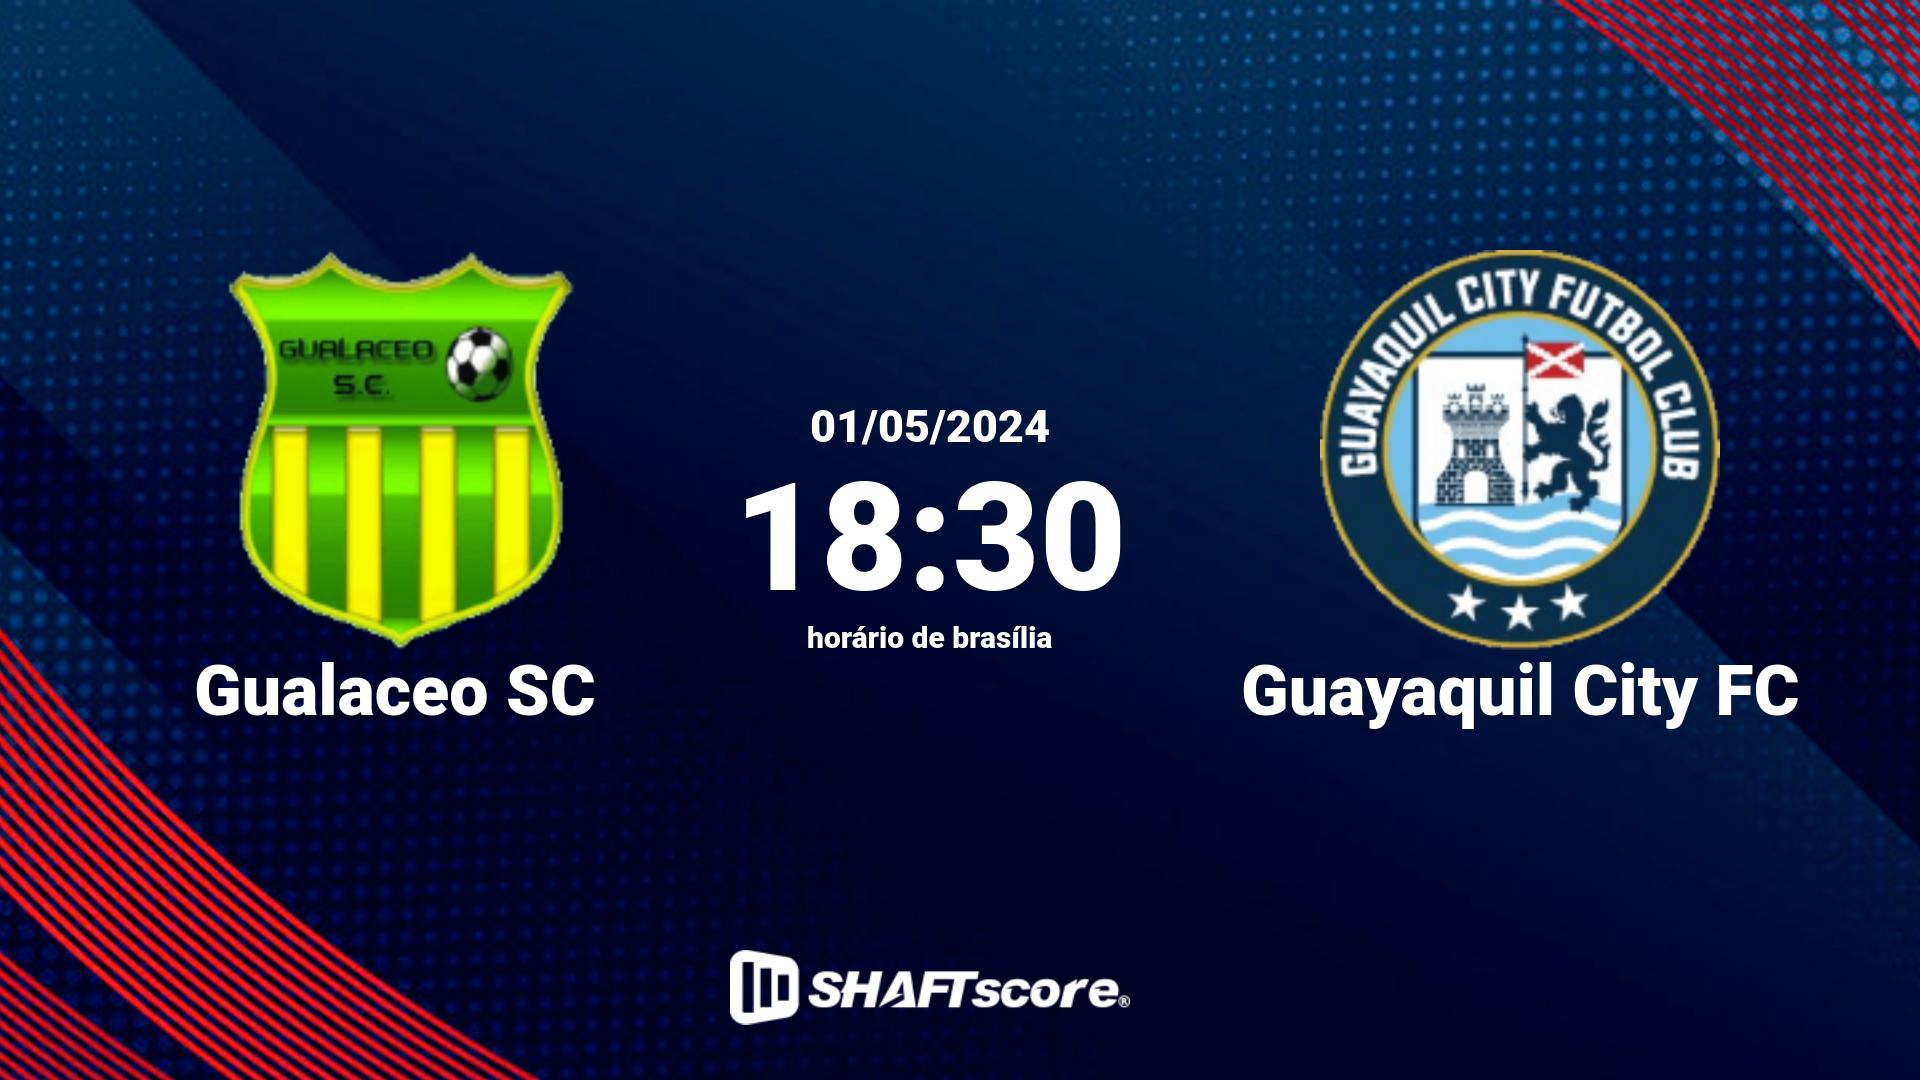 Estatísticas do jogo Gualaceo SC vs Guayaquil City FC 01.05 18:30